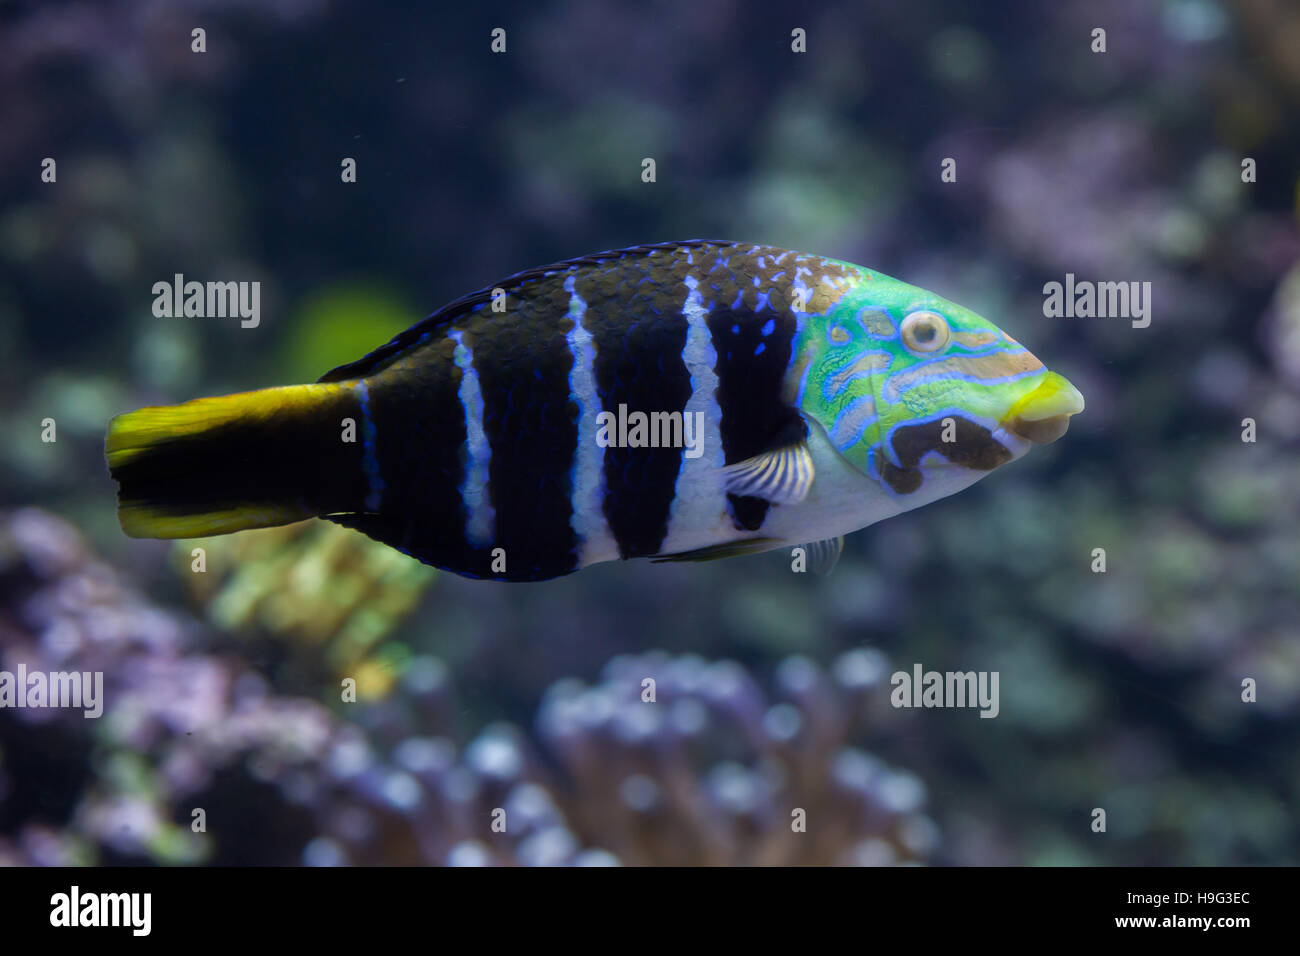 Barred thicklip wrasse (Hemigymnus fasciatus). Marine fish. Stock Photo